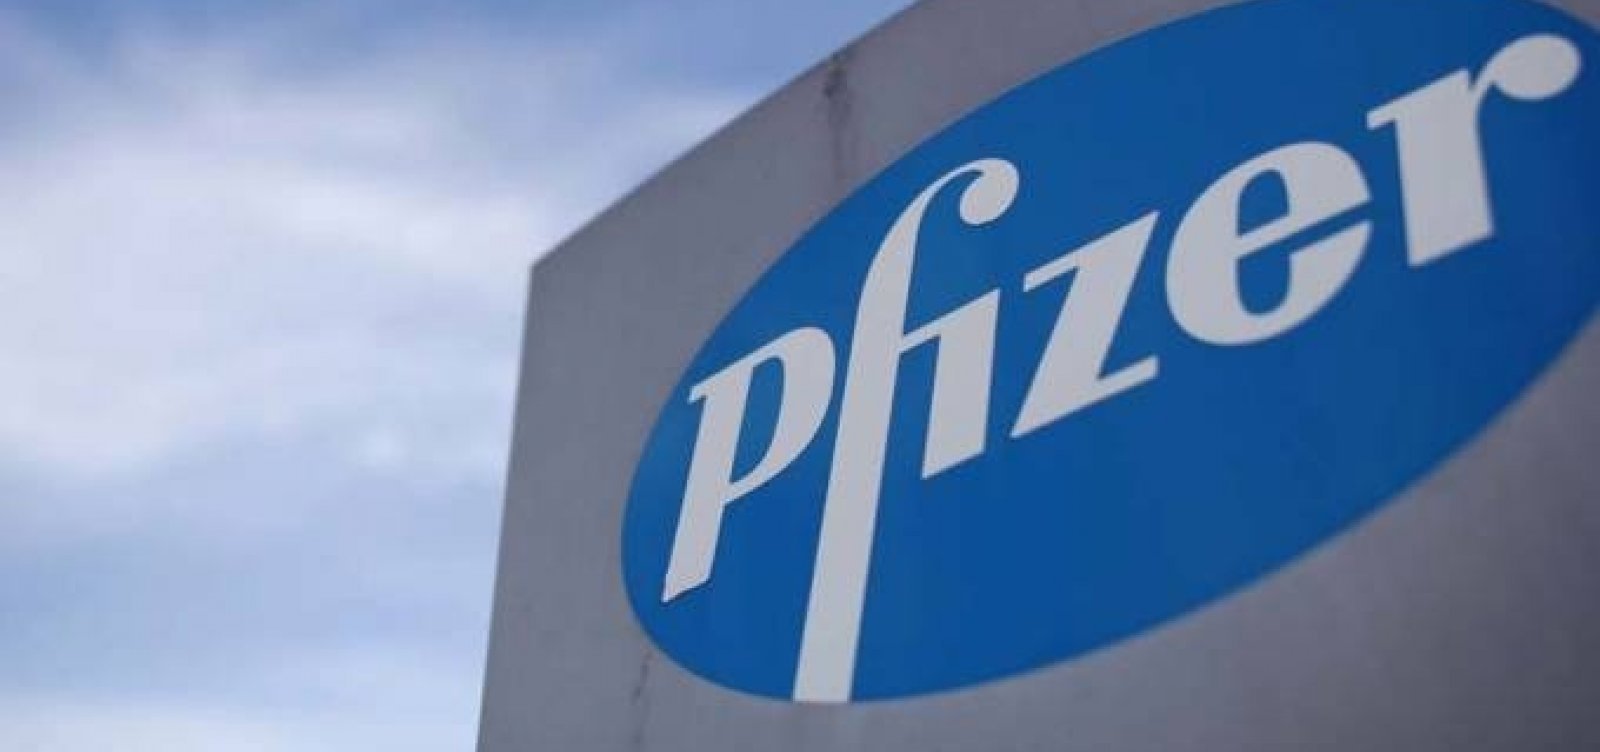 Governo federal quer que empresas privadas assumam cláusulas em negociação com Pfizer 